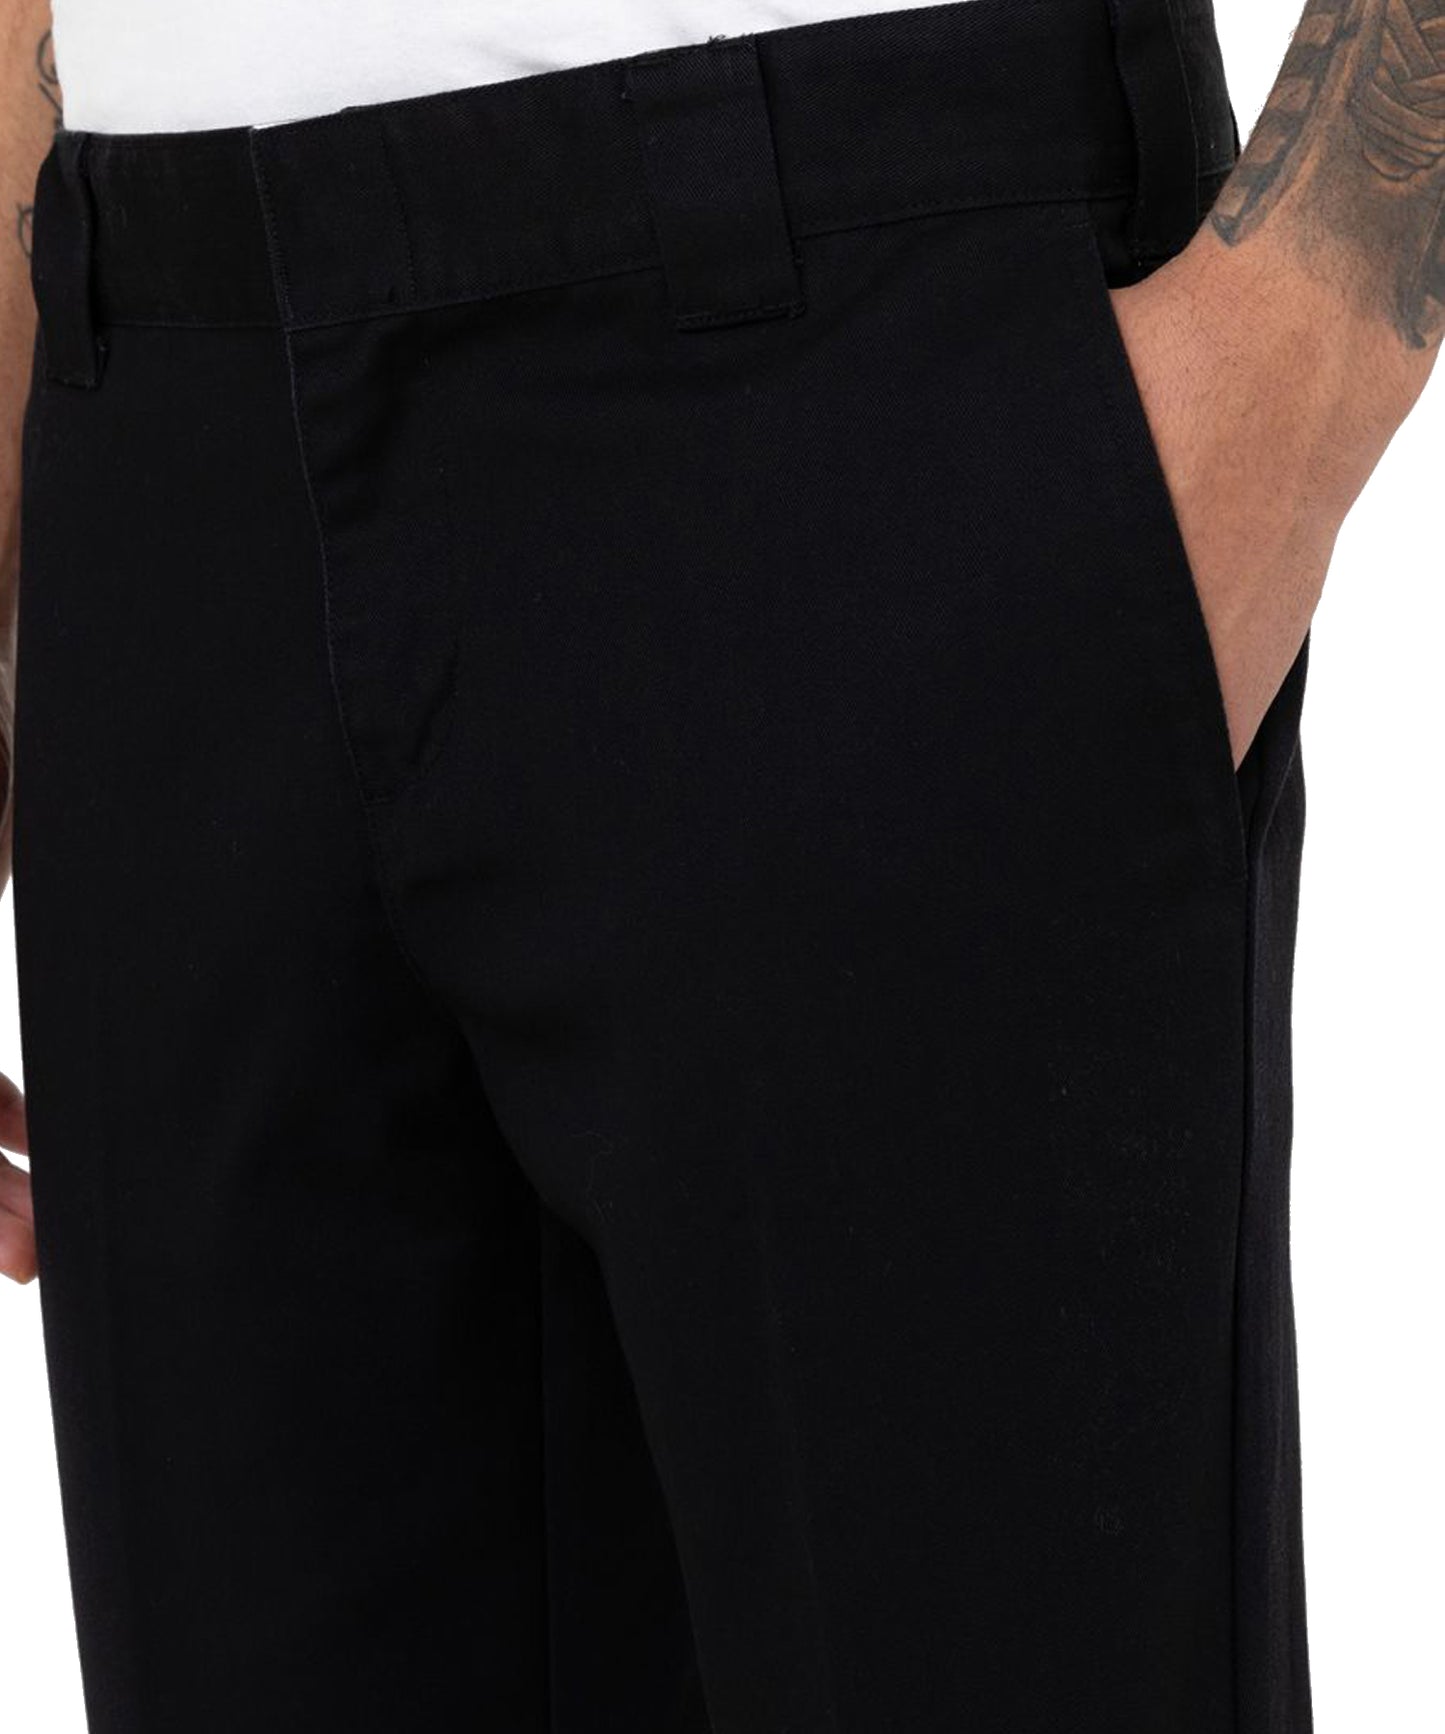 Pantalón largo dickies work pant 872 de color negro-entallado-un tejido antimanchas resistente a las arrugas.